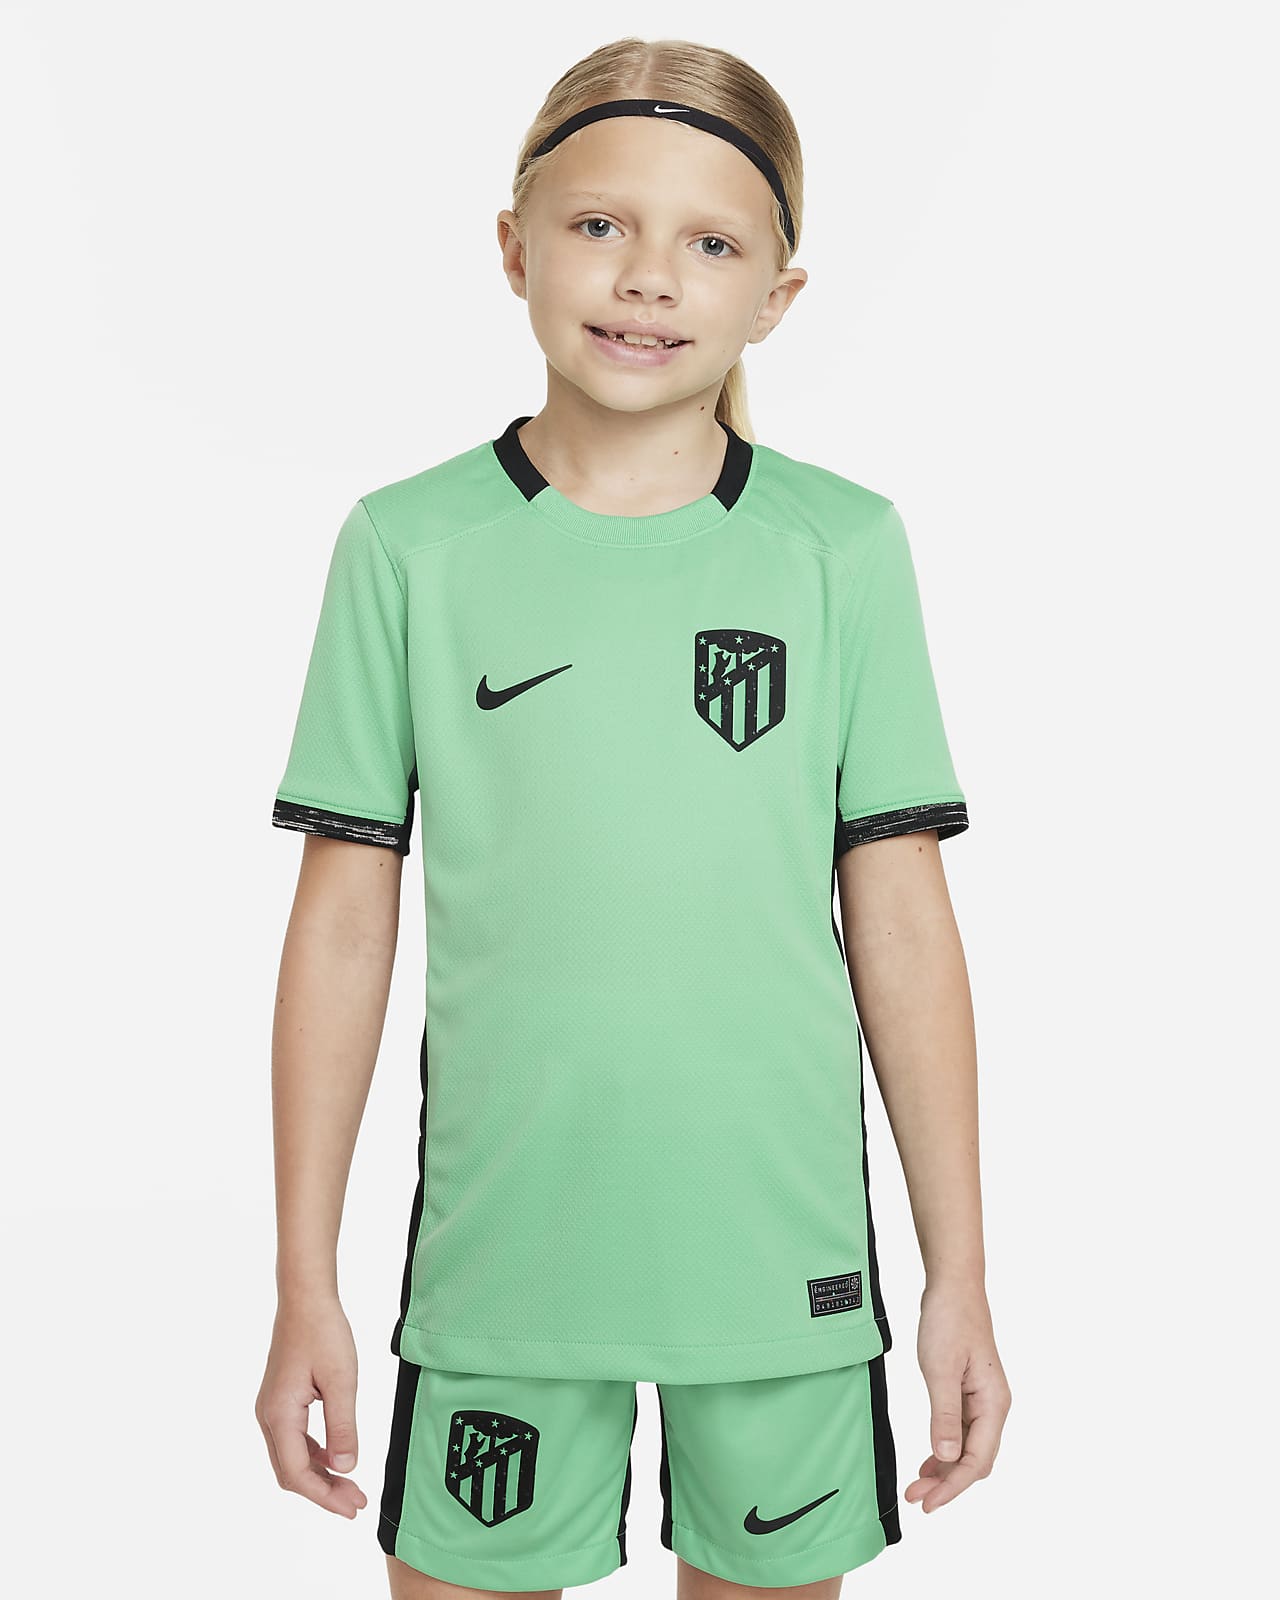 Ποδοσφαιρική φανέλα Nike Dri-FIT εναλλακτικής εμφάνισης Ατλέτικο Μαδρίτης 2023/24 Stadium για μεγάλα παιδιά